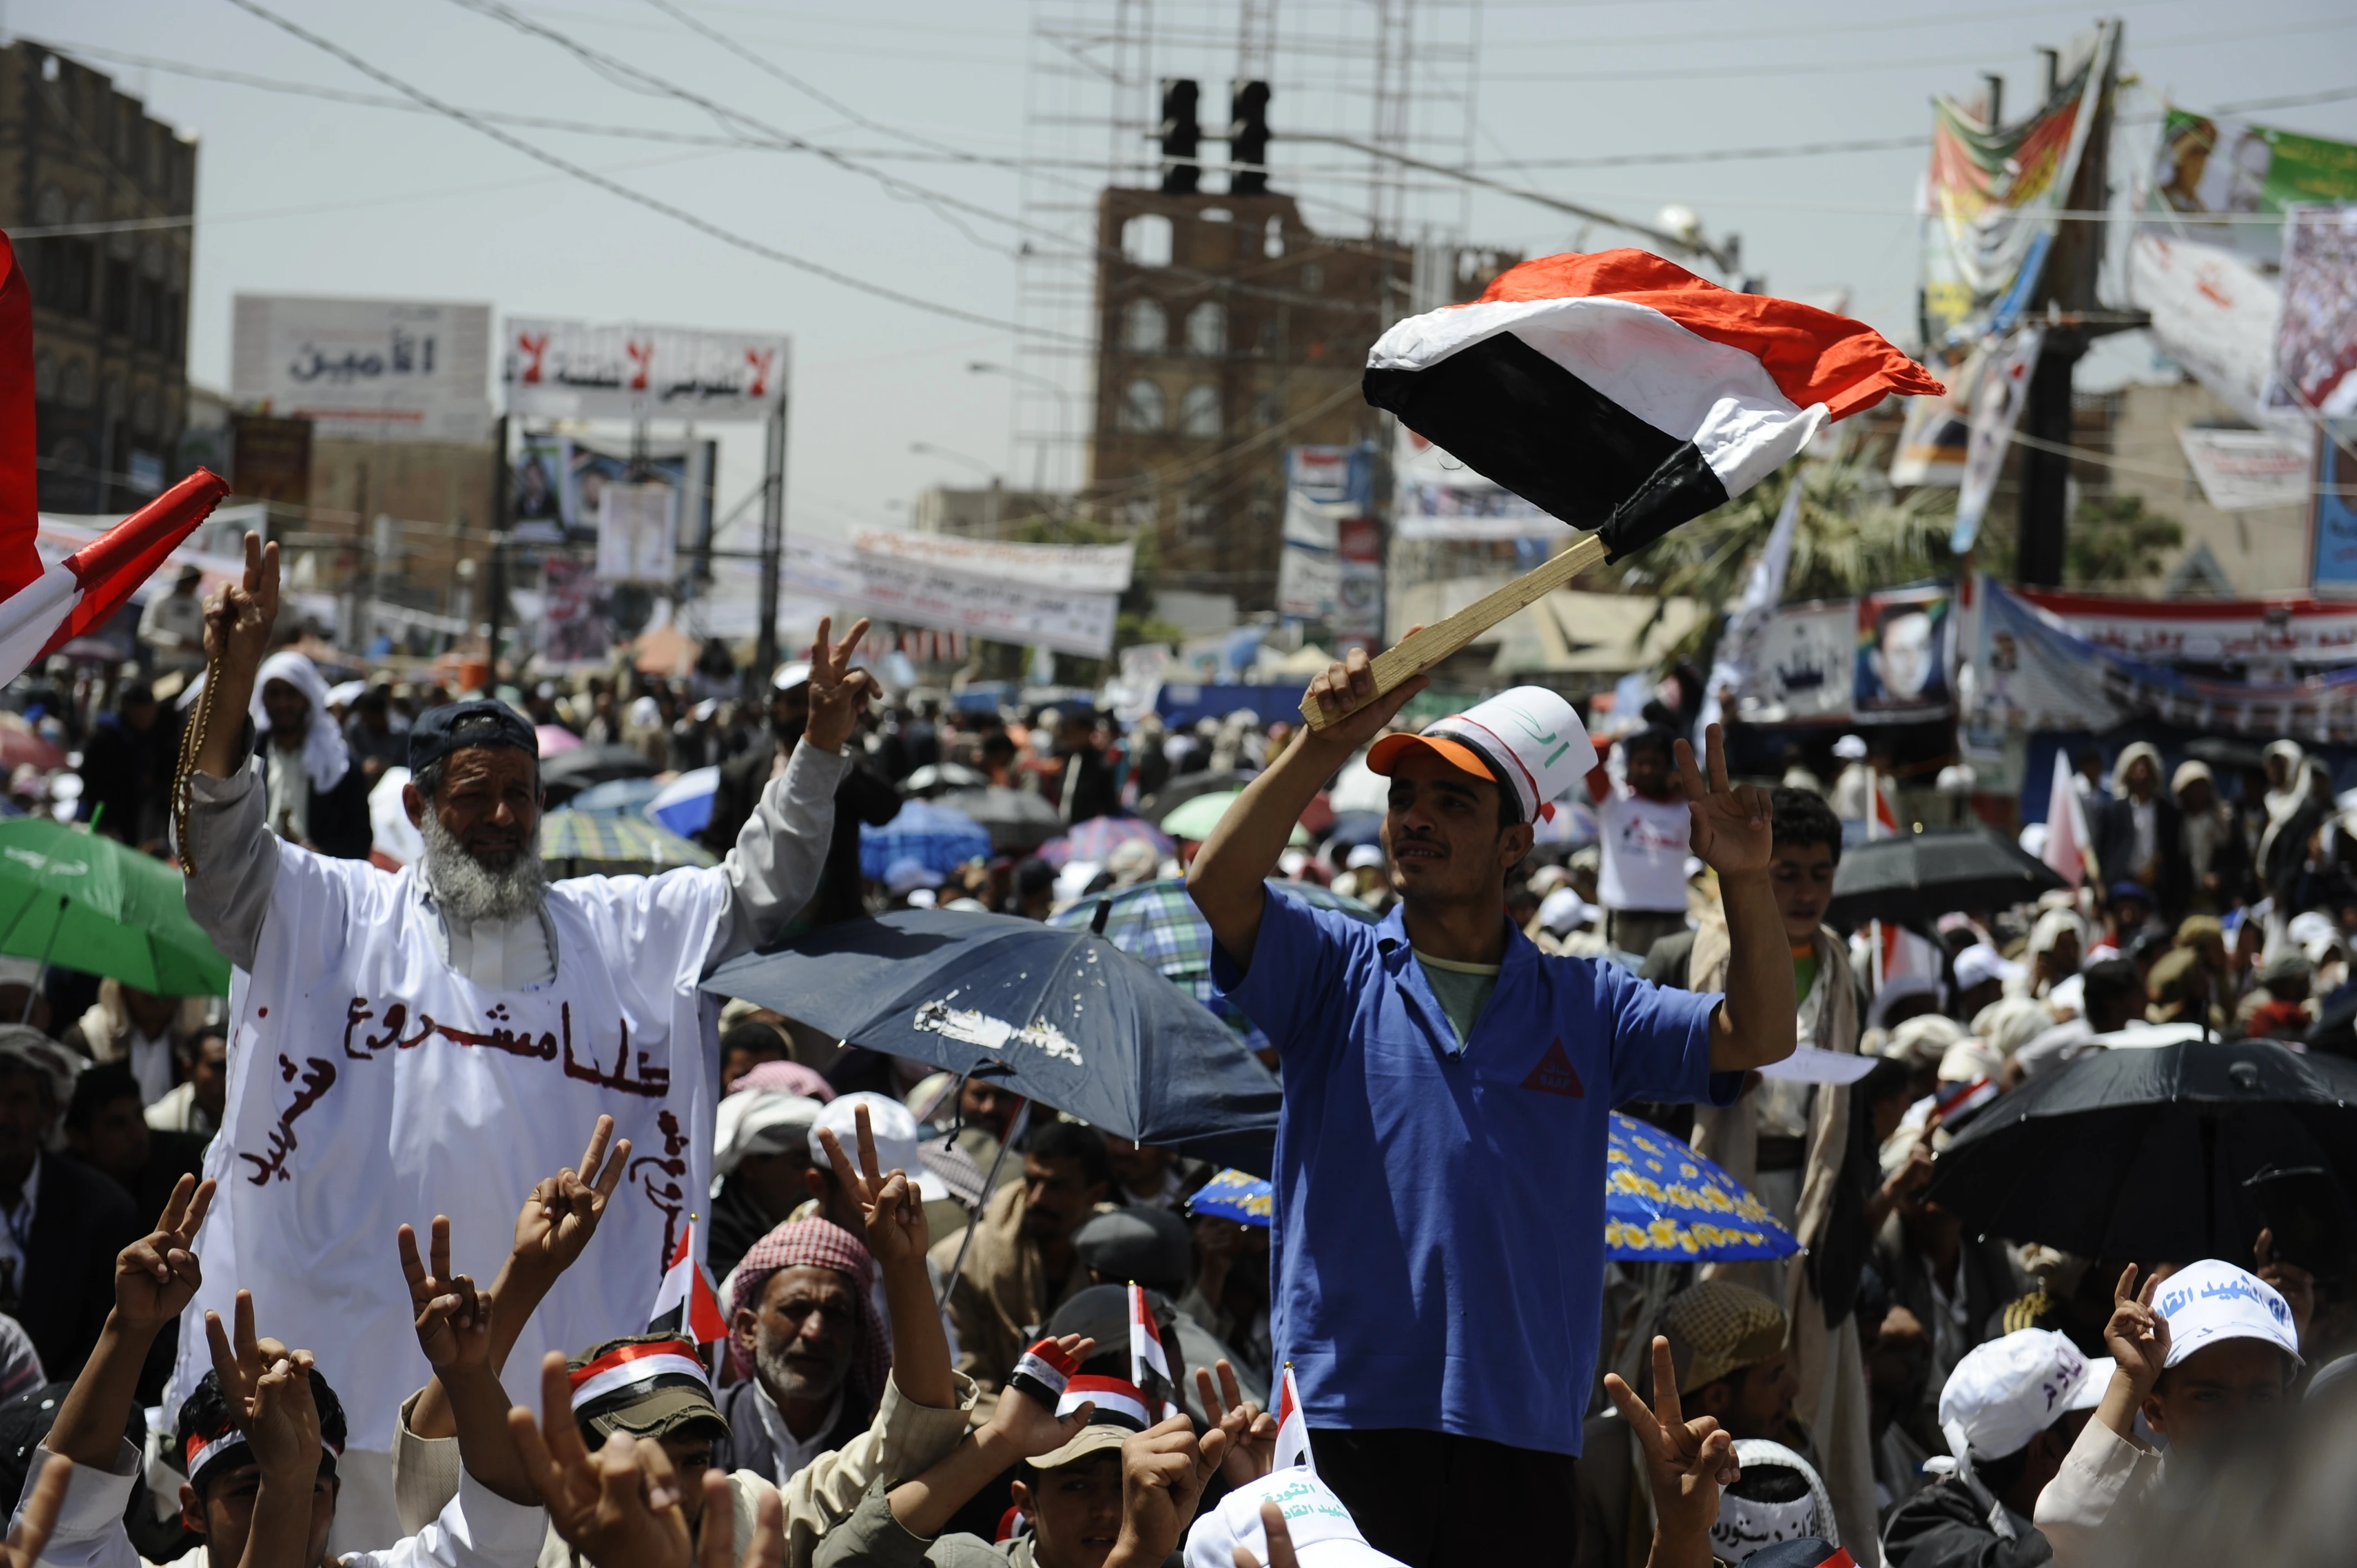 Arap Baharı, Yemen'deki yozlaşmış devlete karşı şiddetli ve şiddet içermeyen gösterilere ve protestolara yol açtı. Yemen'in başkenti Sanaa'da sokaklar doldu